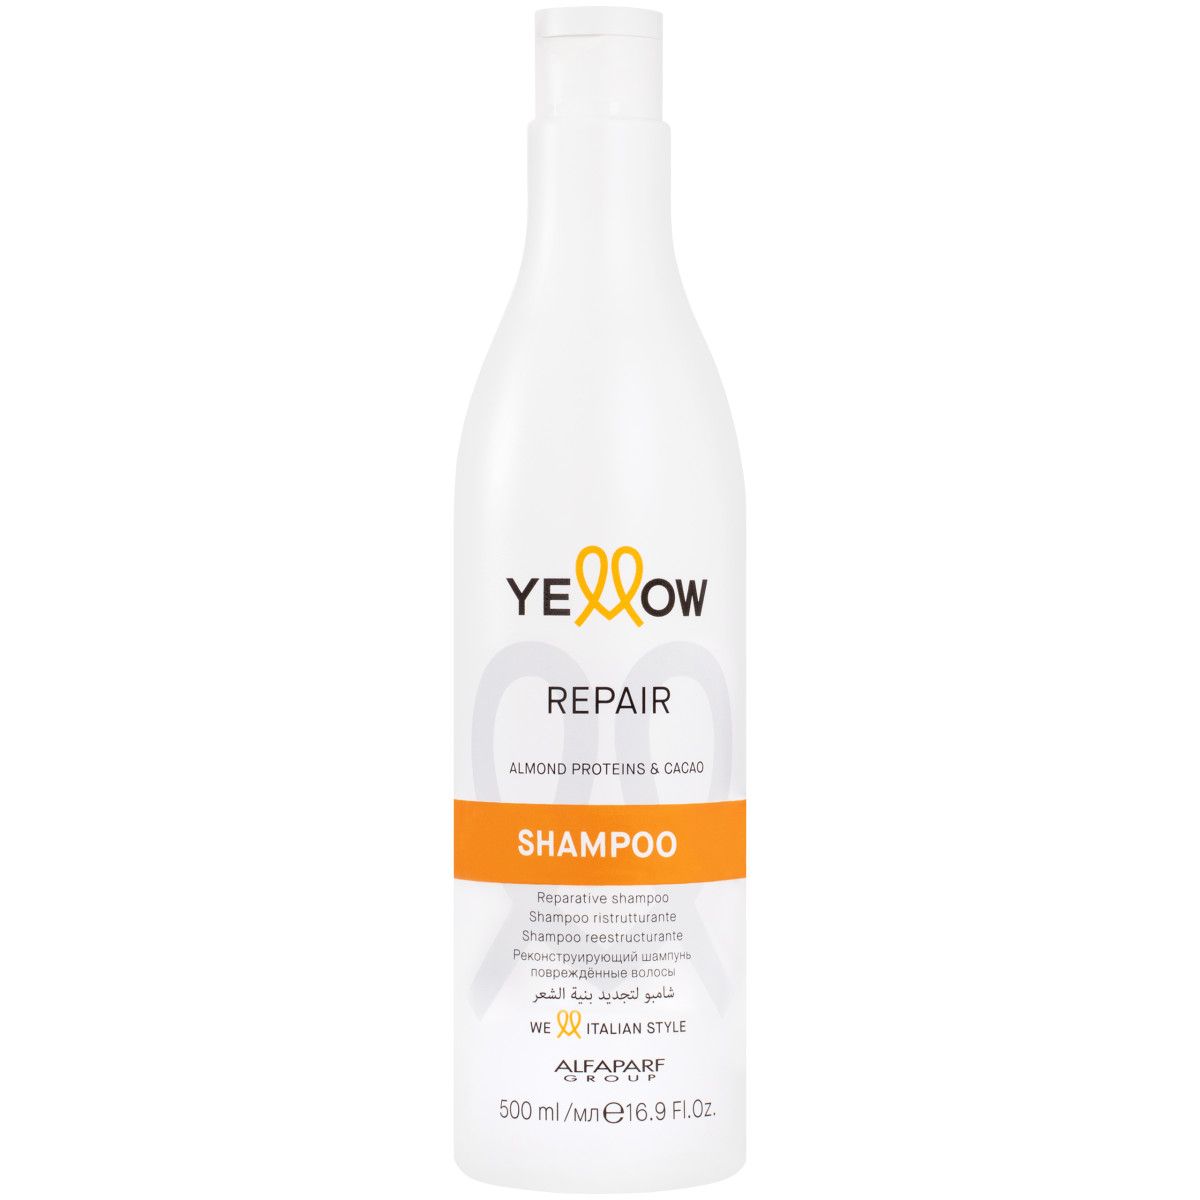 Alfaparf YELLOW Repair - szampon regenerujący do włosów zniszczonych, 500ml